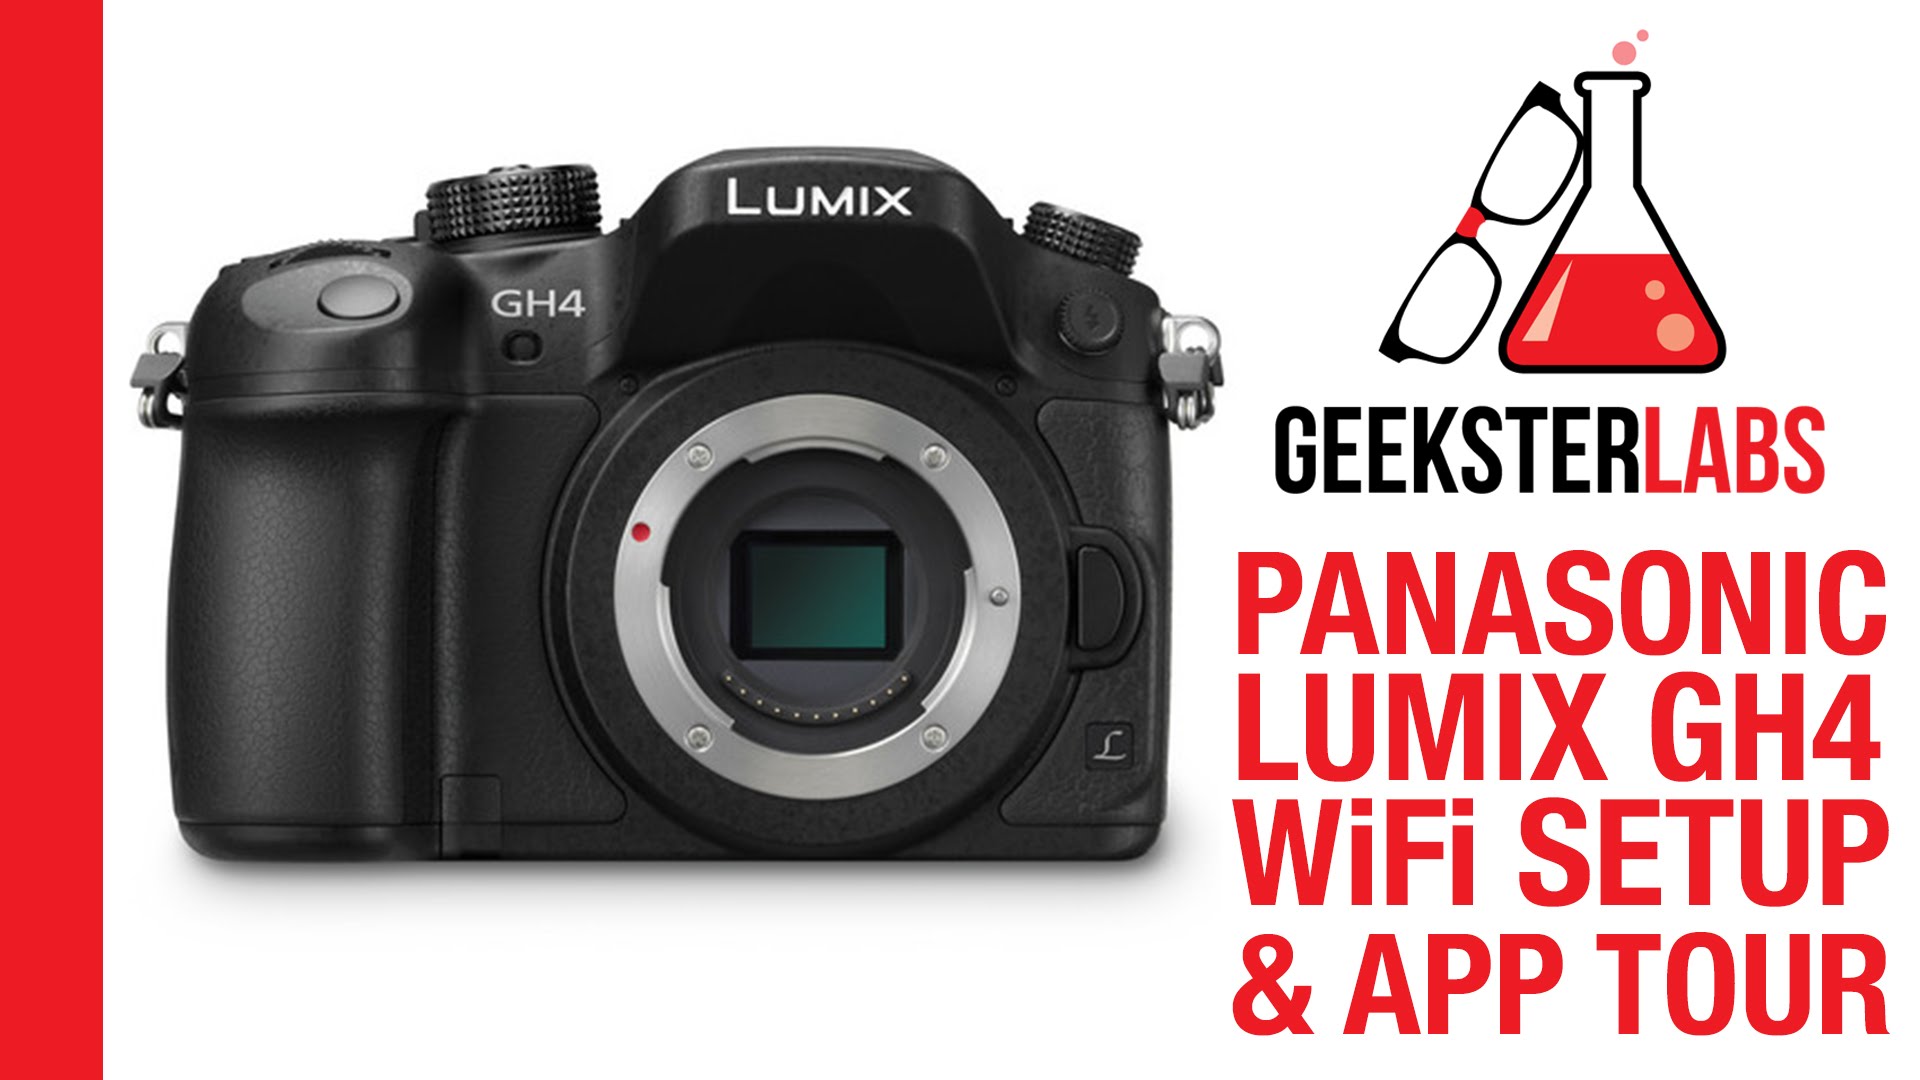 Panasonic Lumix GH4 WiFi Setup & App Tour